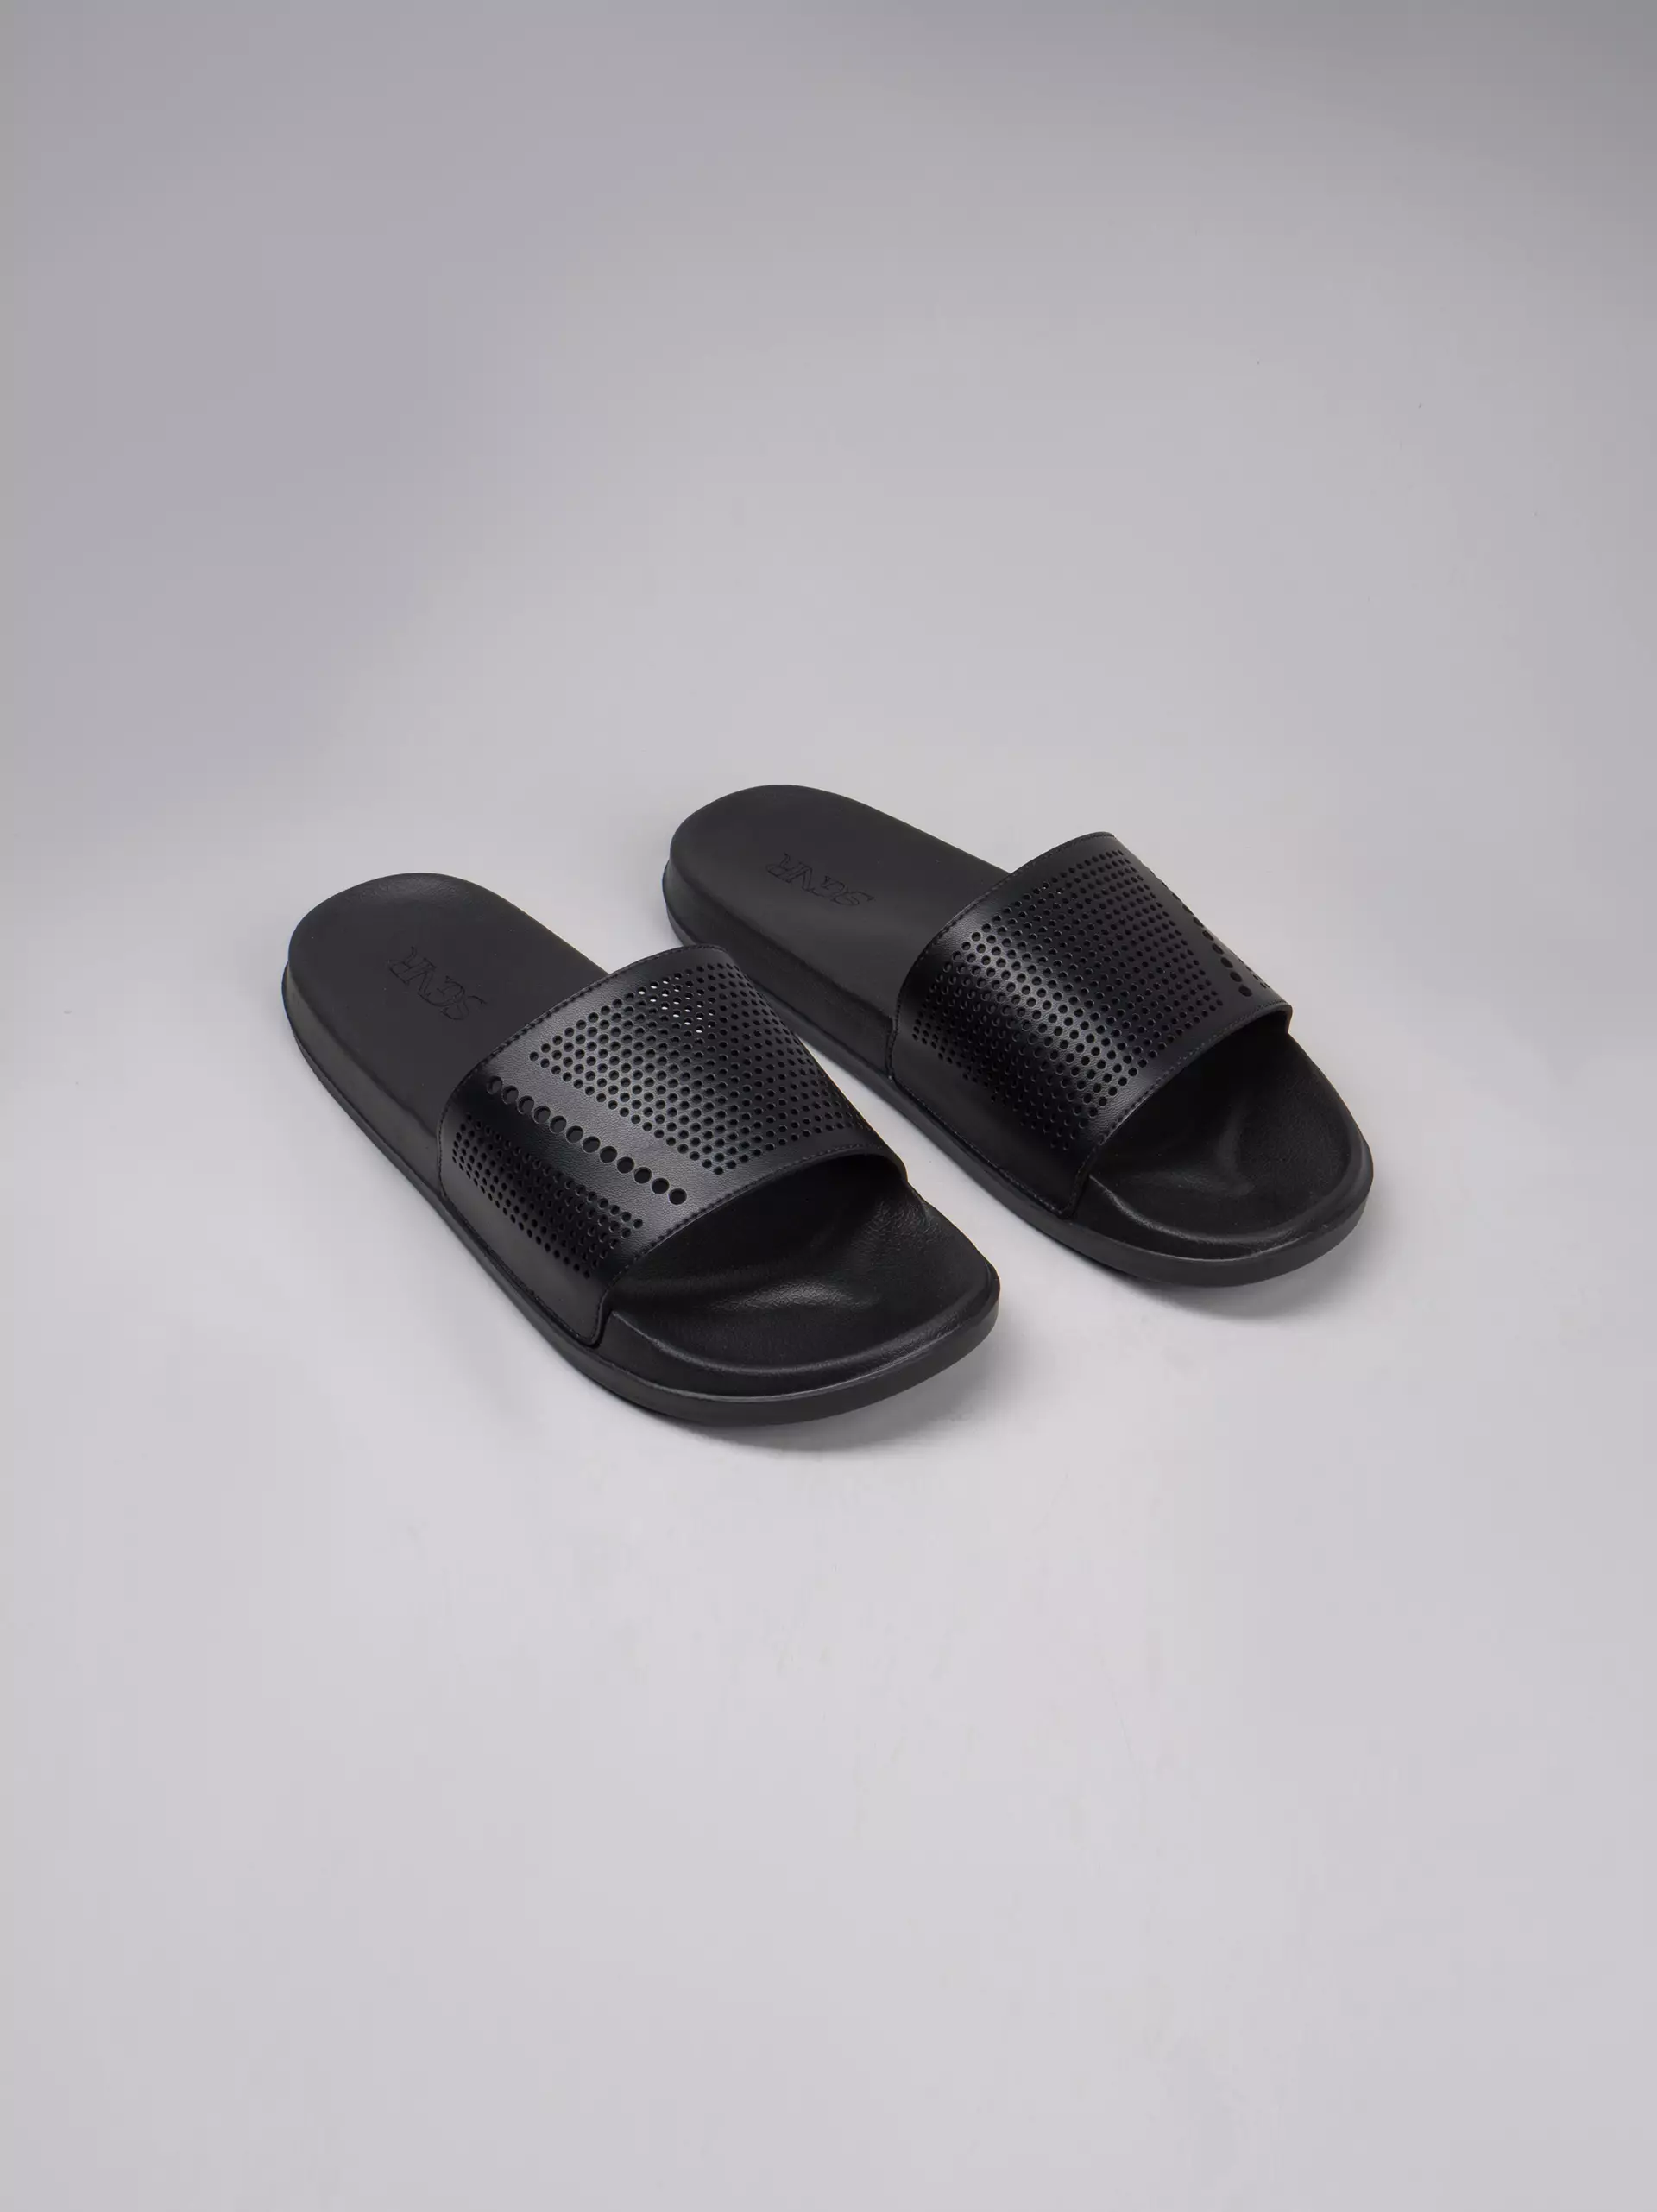 Jual SIGNORE Textured Sandals Black Original 2023 | ZALORA Indonesia